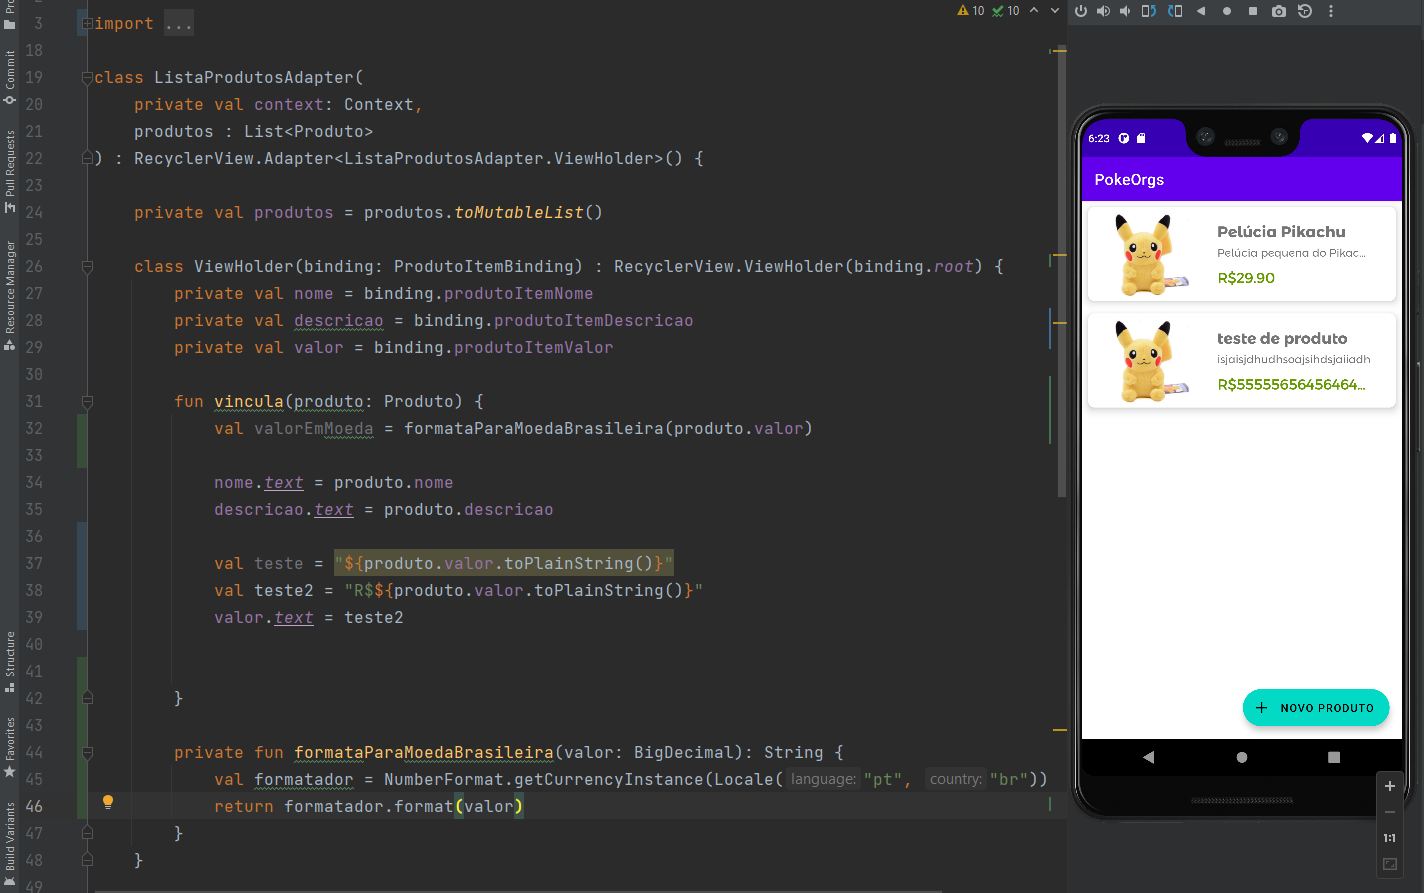 Print da tela do Android Studio com o emulador rodando o código da aula igual ao do aluno